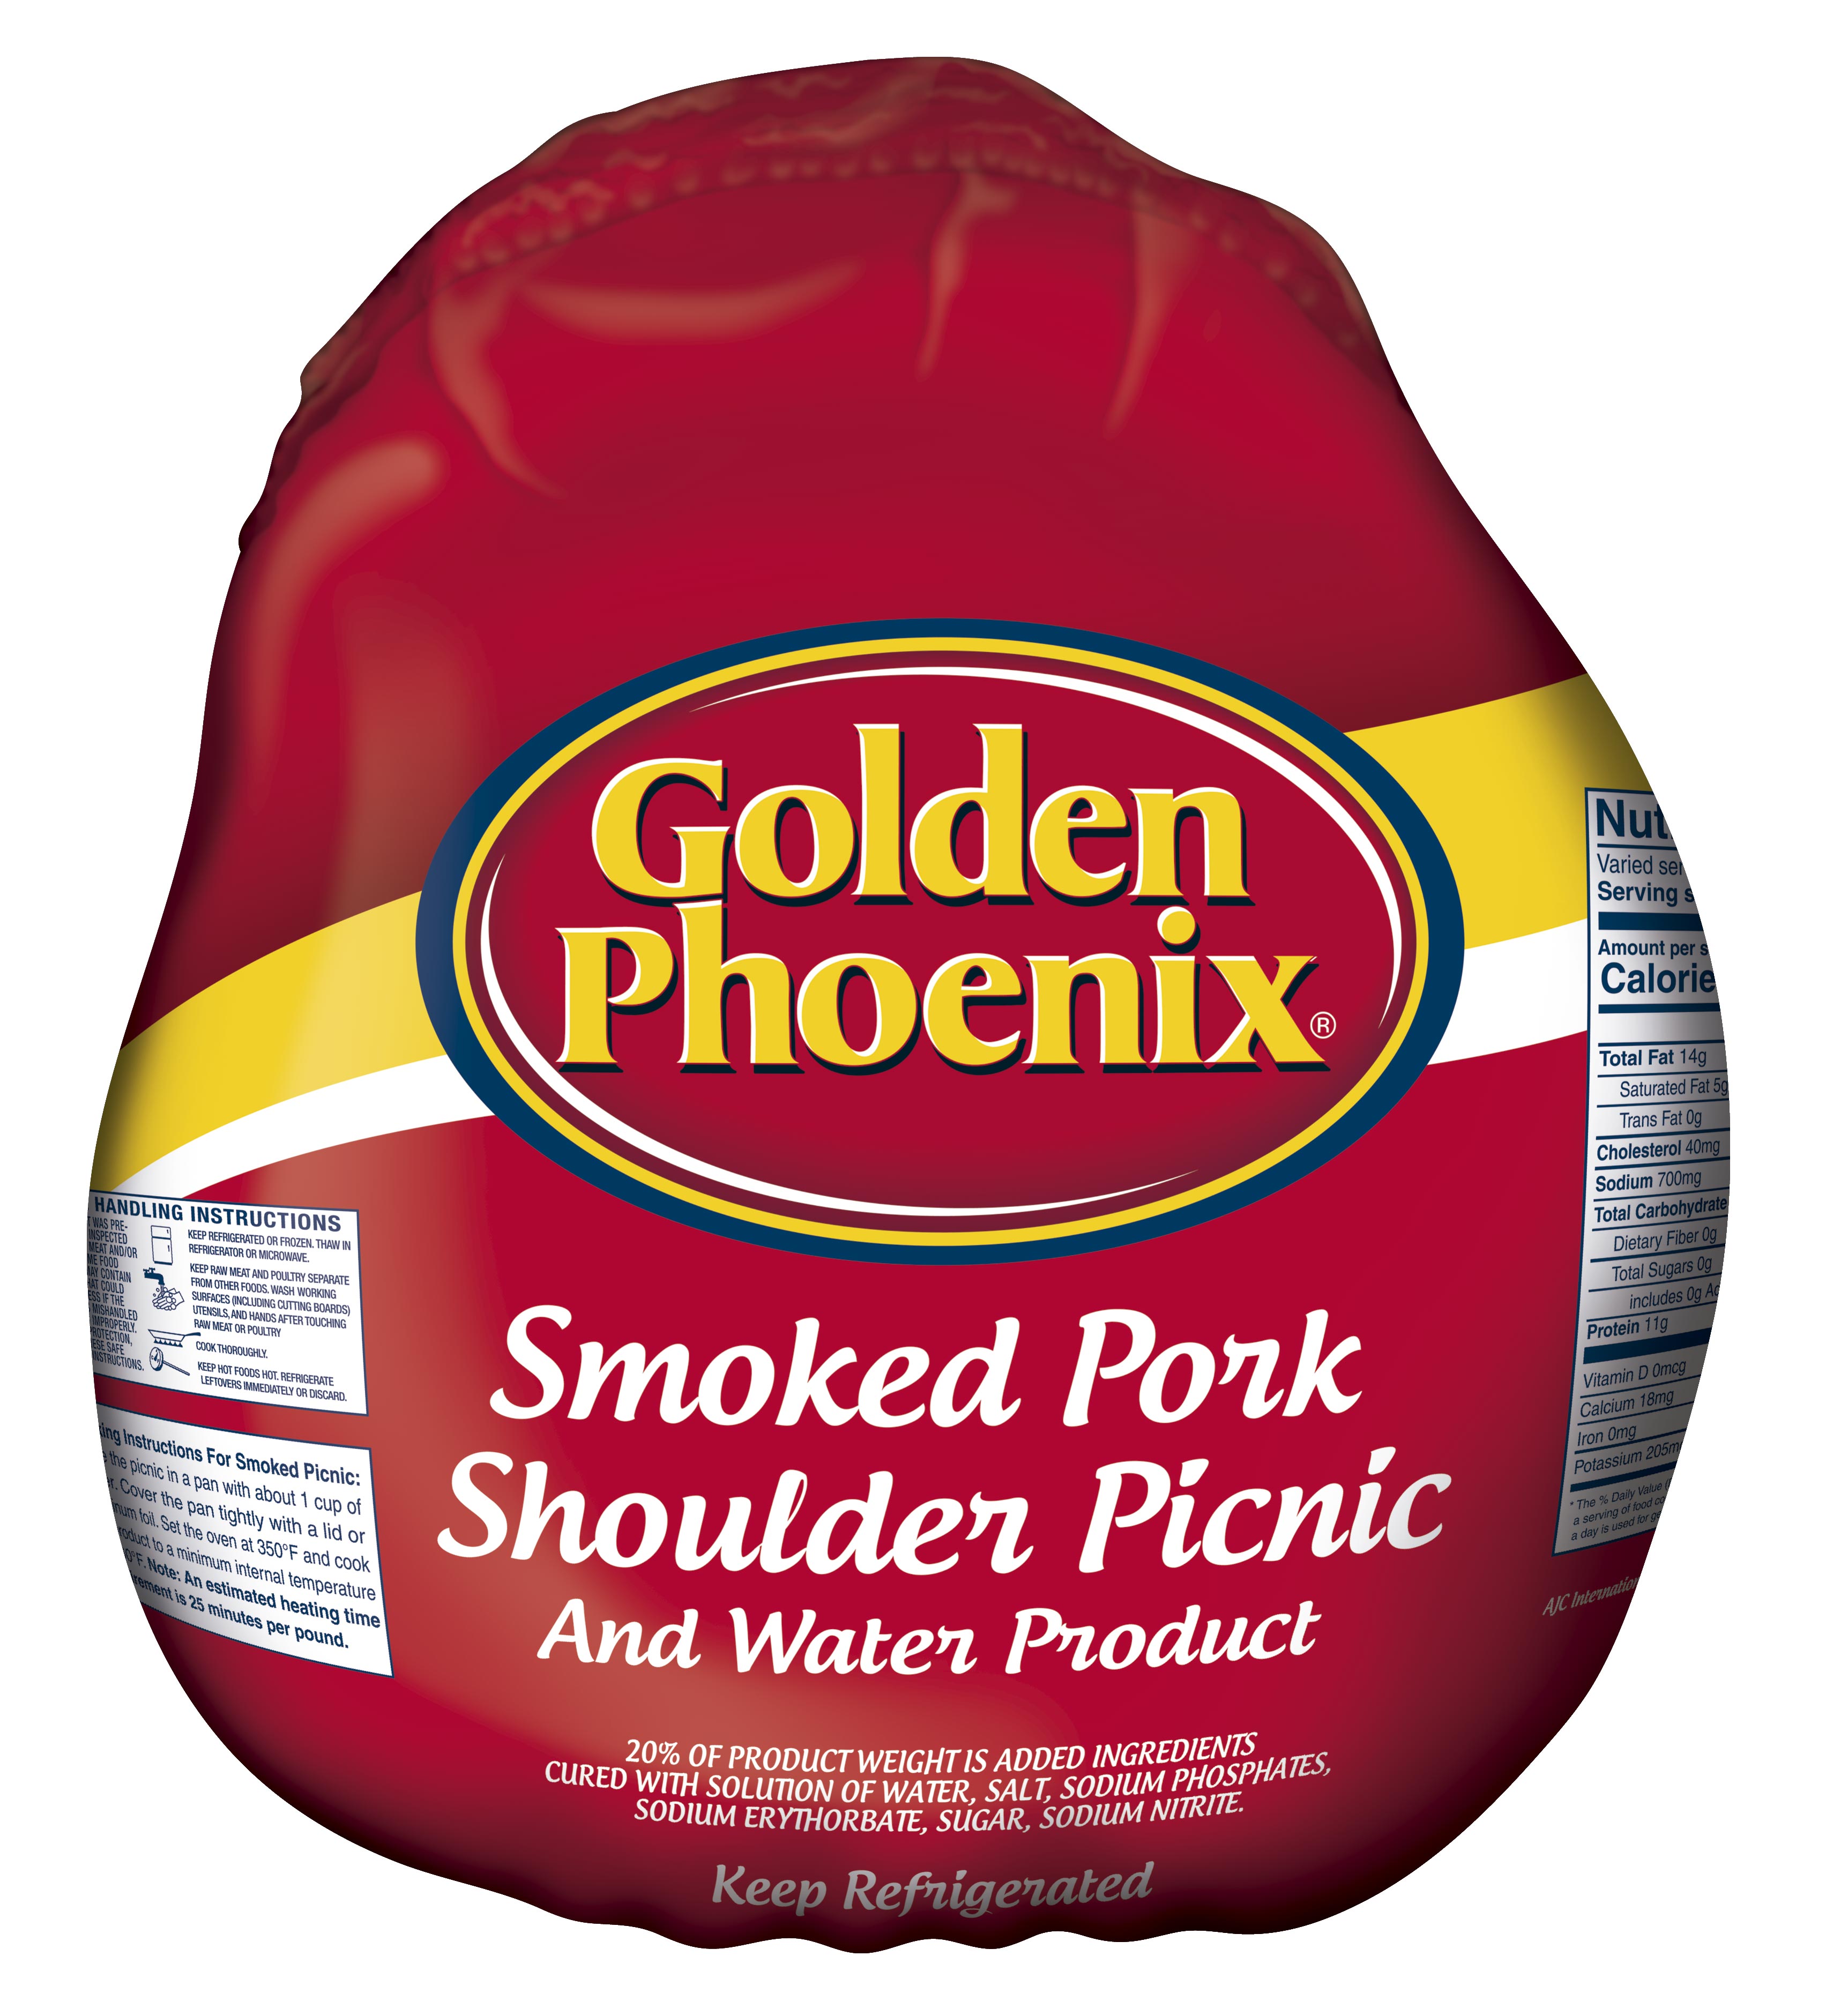 Pork Shoulder Picnic